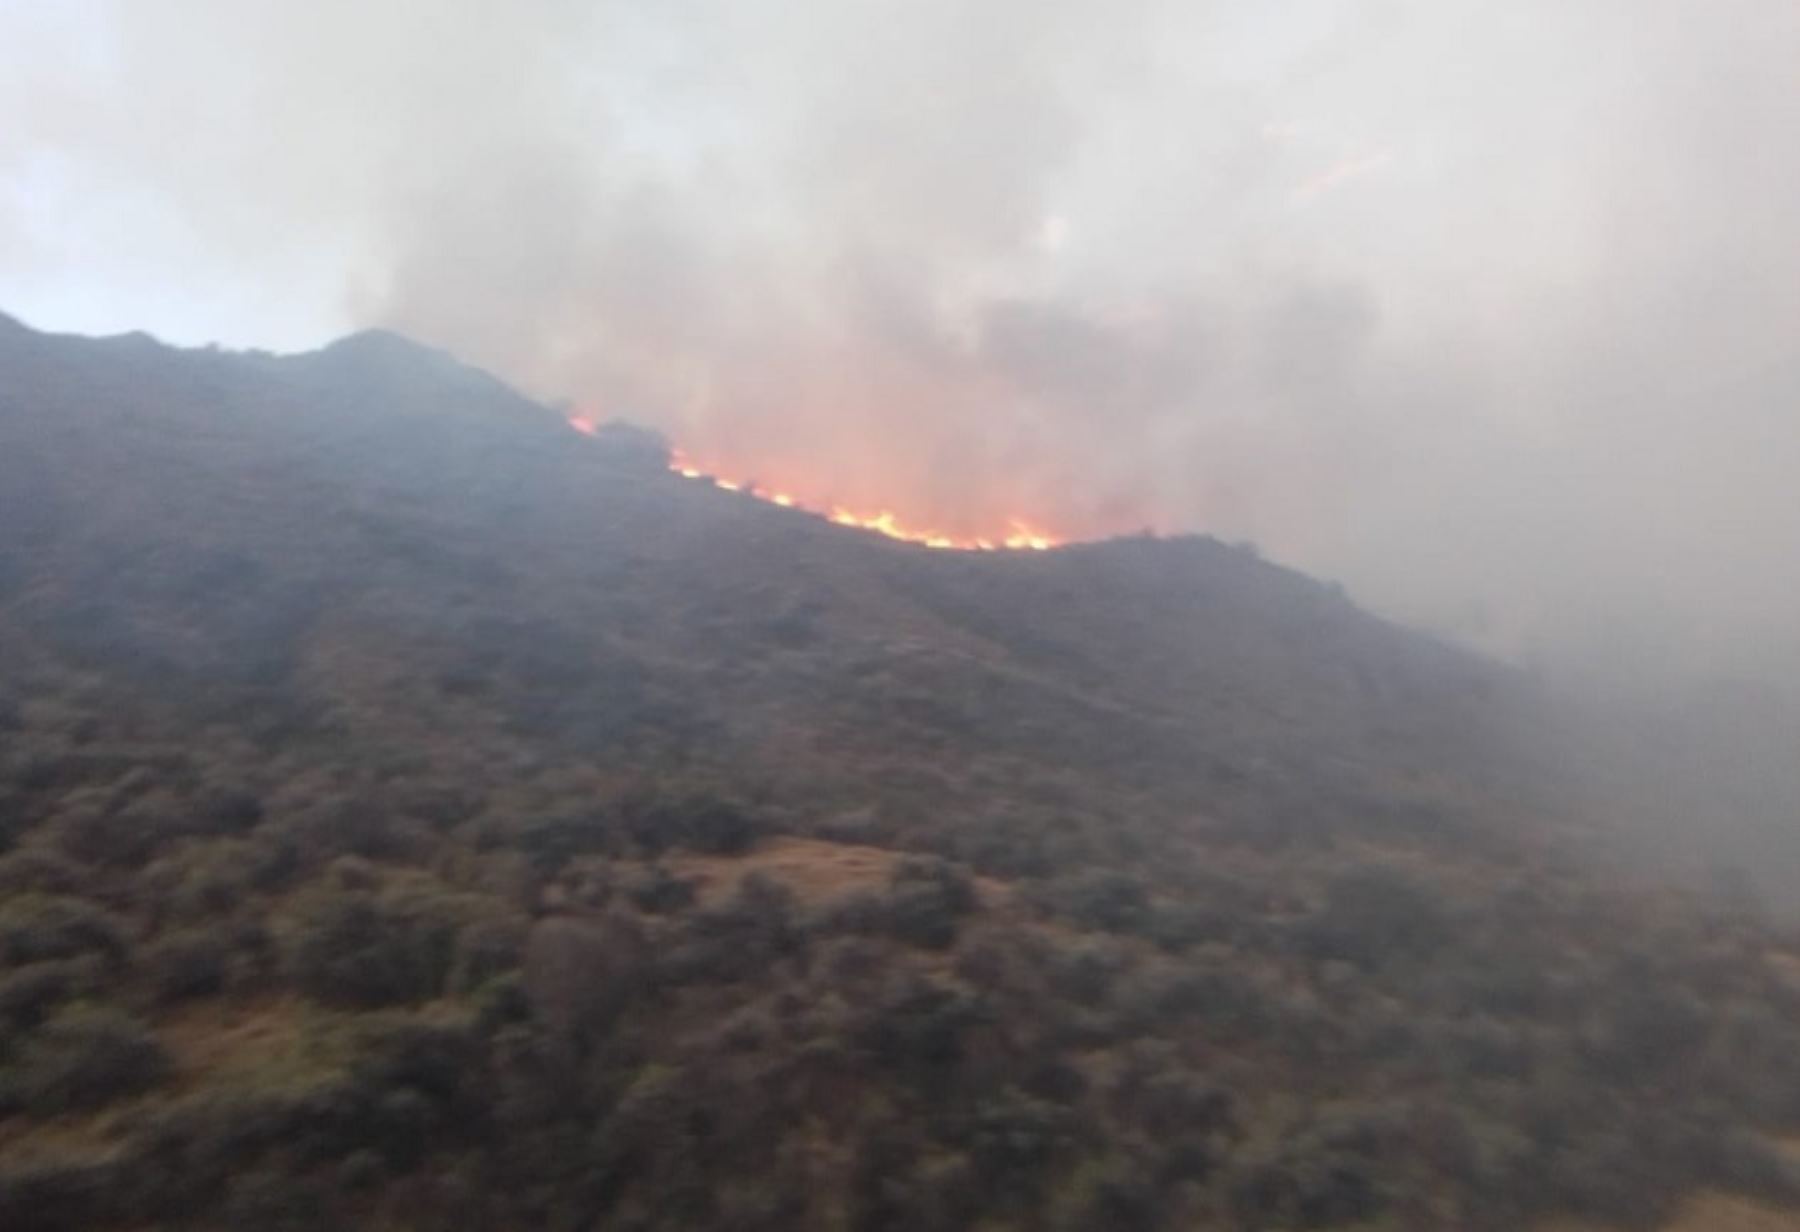 Un incendio forestal registrado en el sector Carhuascancha del distrito de Huántar, en la provincia de Huari, arrasó más de 1,000 hectáreas de pastos naturales, informaron autoridades locales.